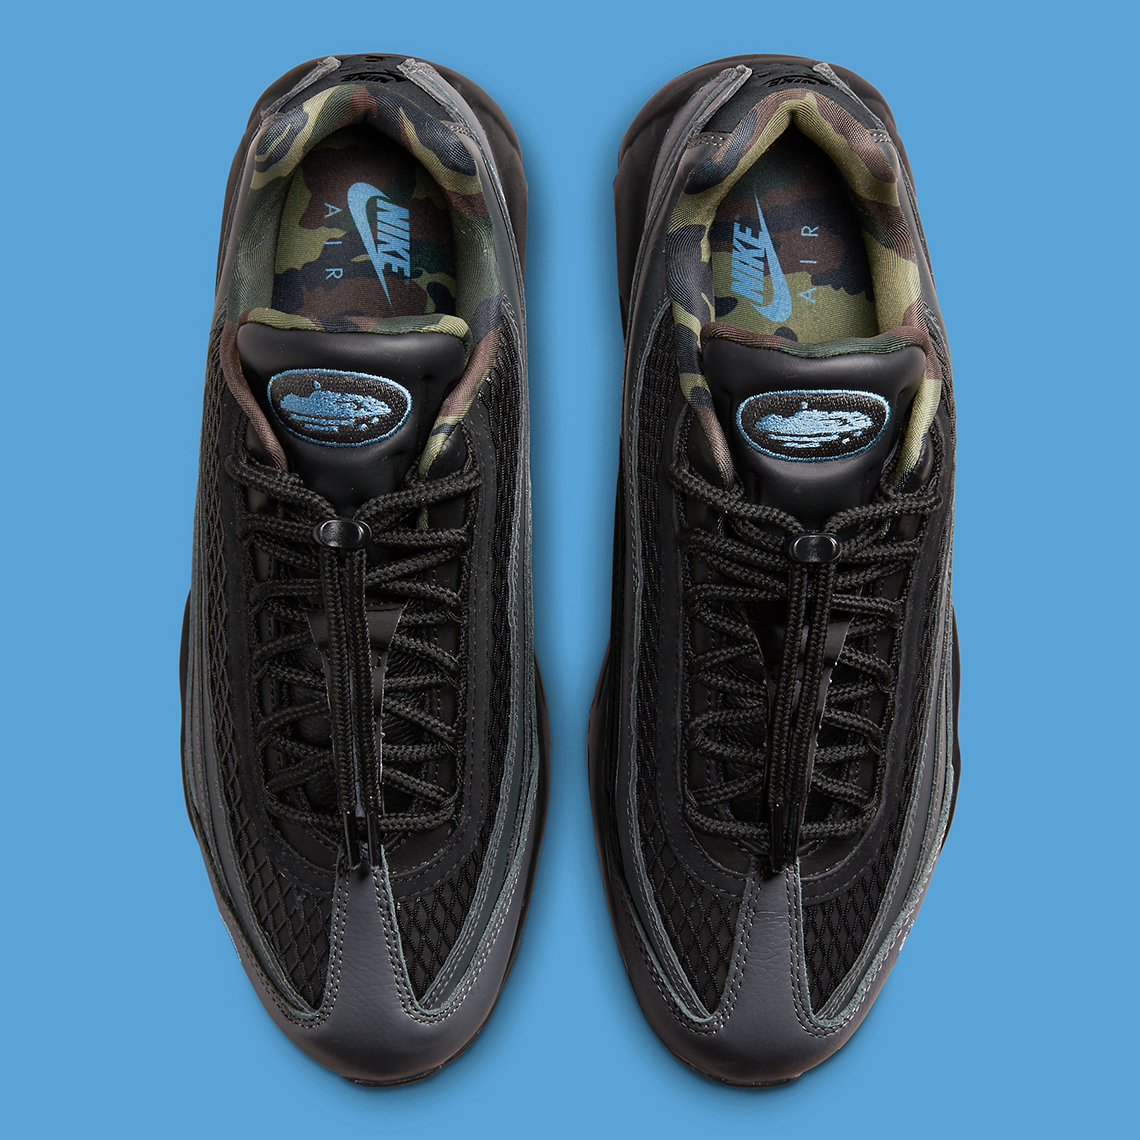 Corteiz x Nike Air Max 95 "Les Bleus" FB2709002 Sneaker News